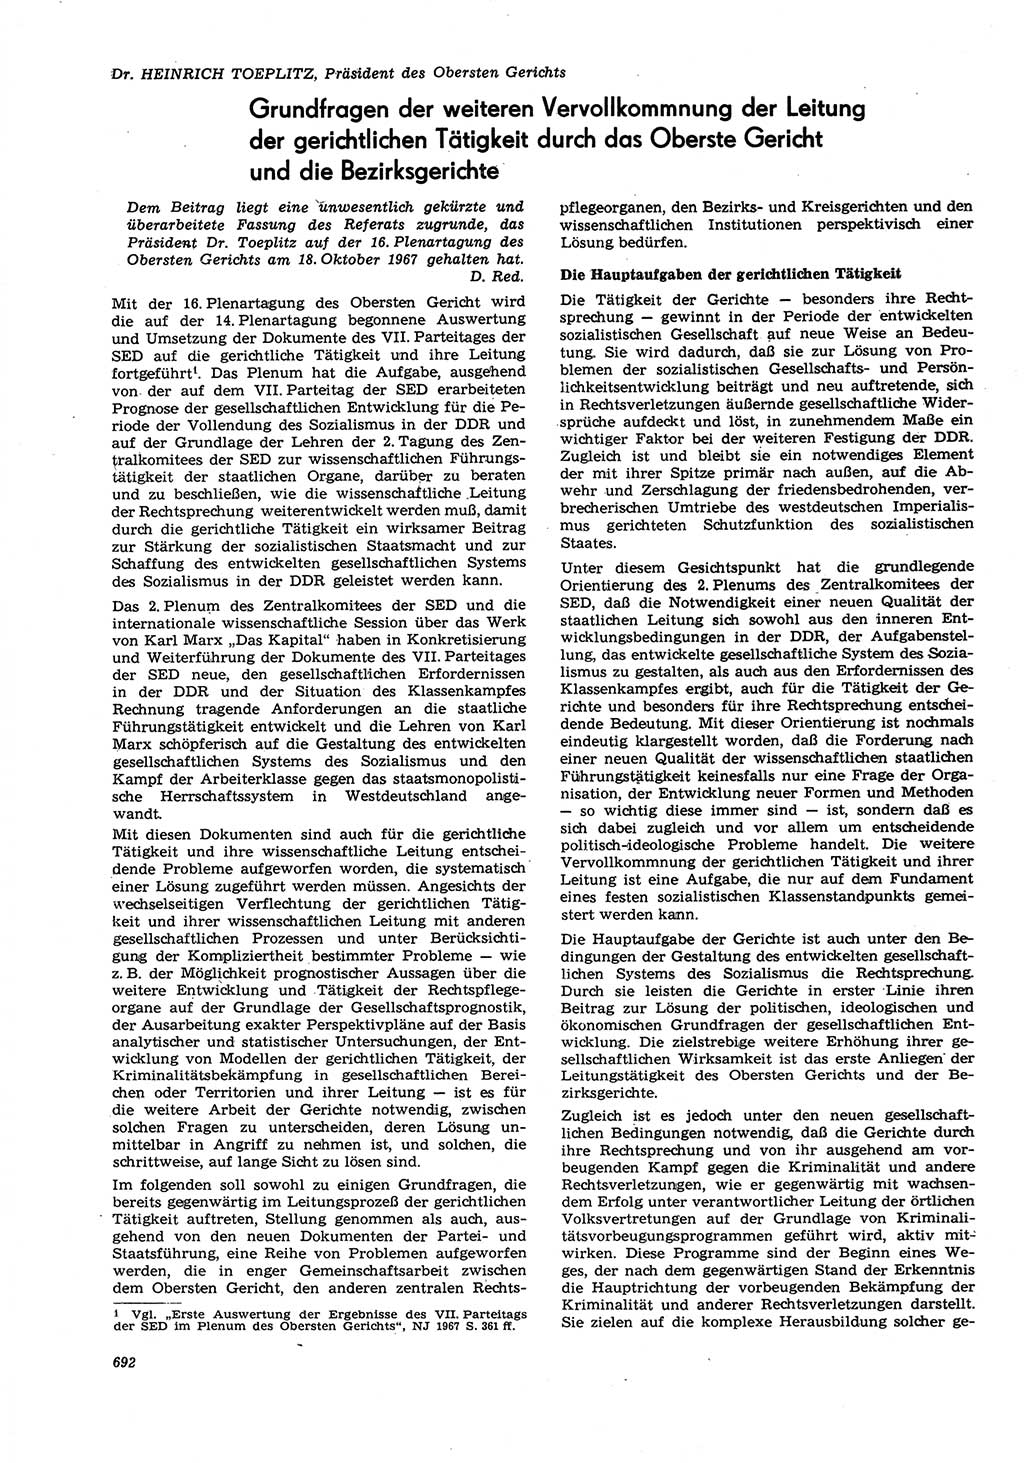 Neue Justiz (NJ), Zeitschrift für Recht und Rechtswissenschaft [Deutsche Demokratische Republik (DDR)], 21. Jahrgang 1967, Seite 692 (NJ DDR 1967, S. 692)